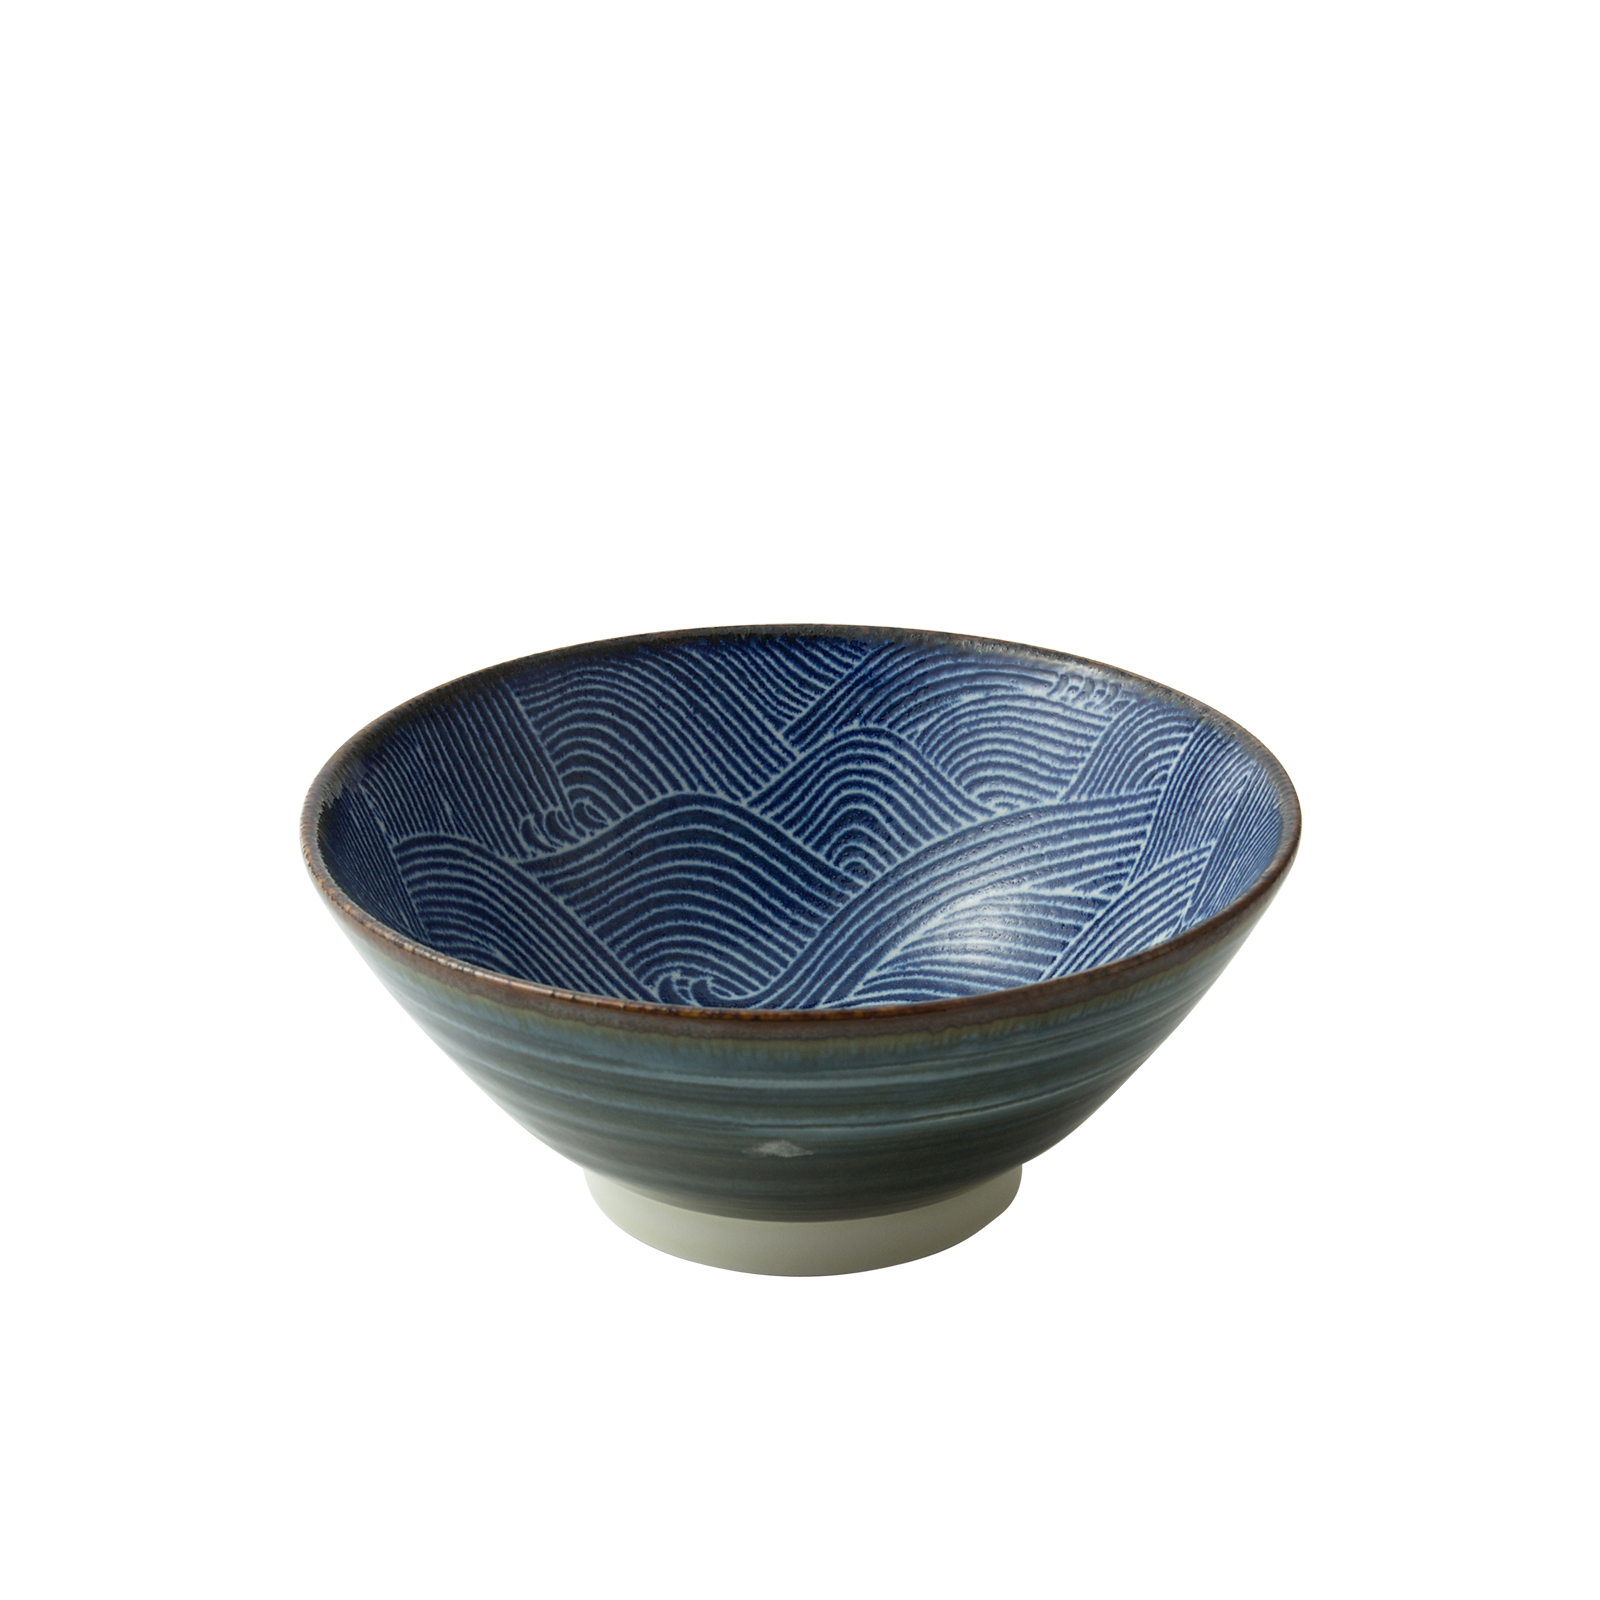 miyacompany aranami bowl 7 C